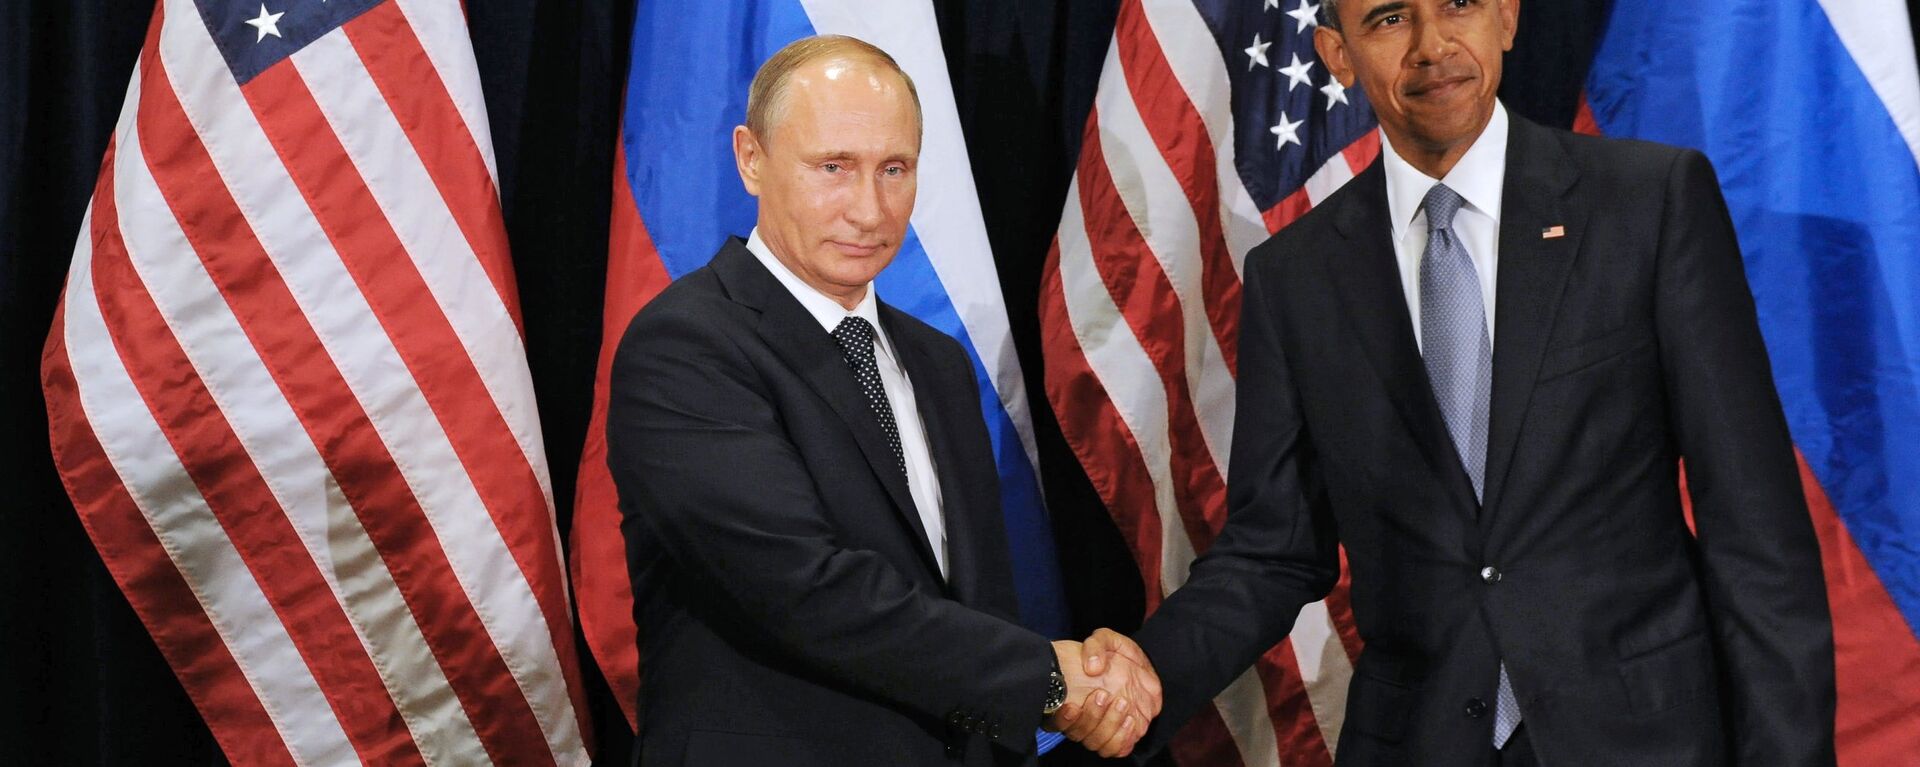 რუსეთისა და აშშ–ის პრეზიდენტები: ვლადიმირ პუტინი და ბარაკ ობამა - Sputnik საქართველო, 1920, 25.12.2015